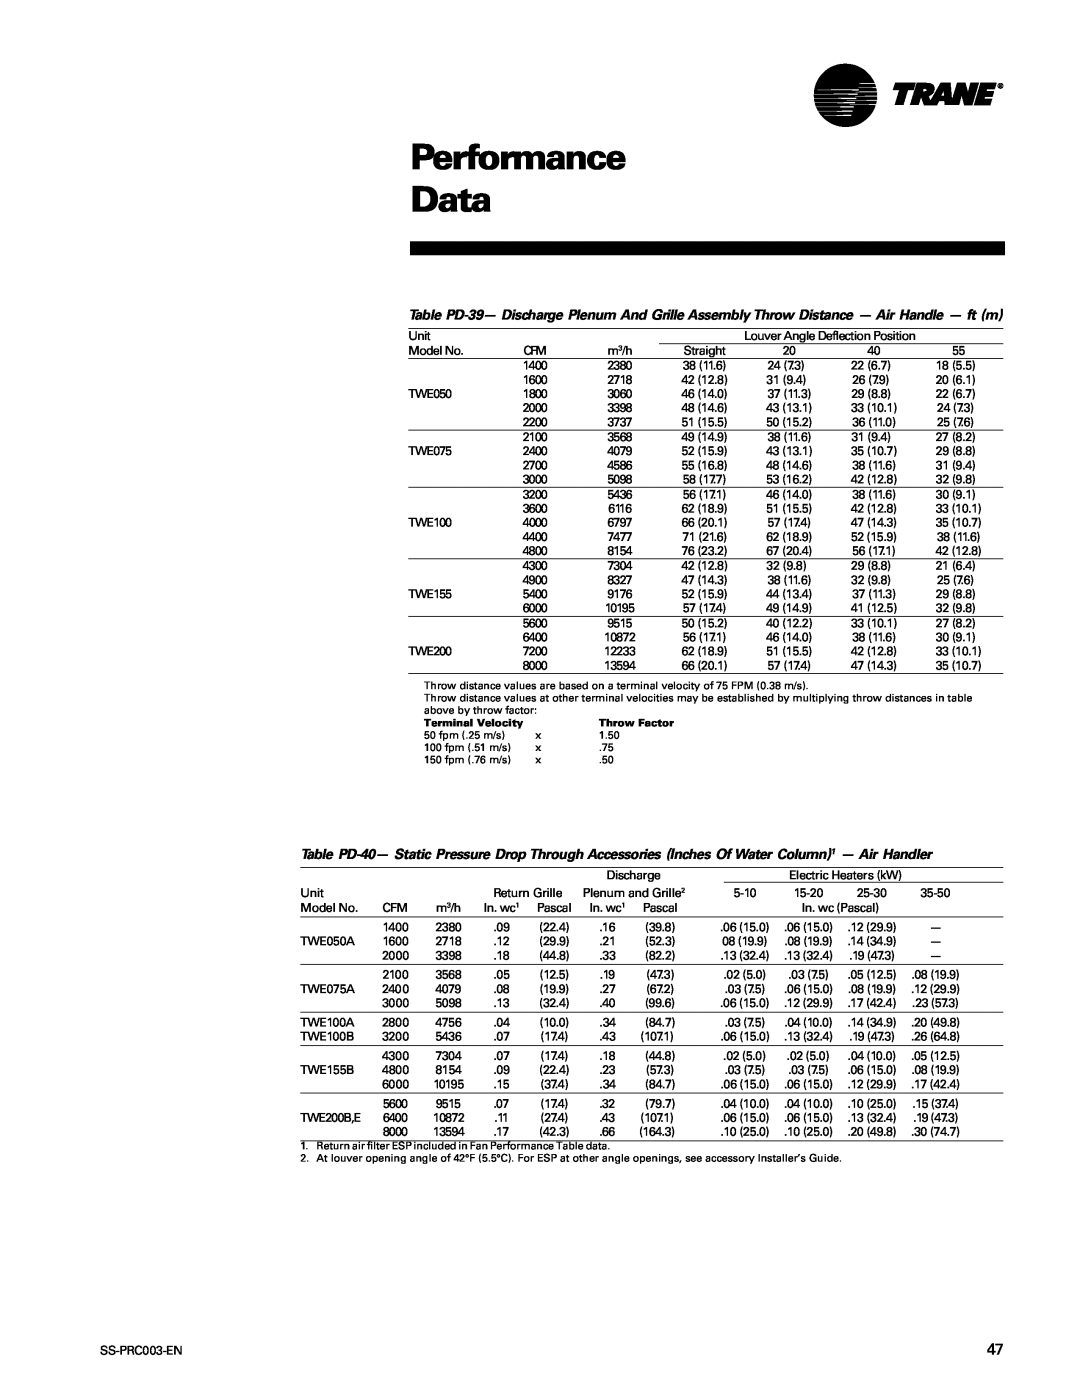 Trane SS-PRC003-EN manual Performance Data 